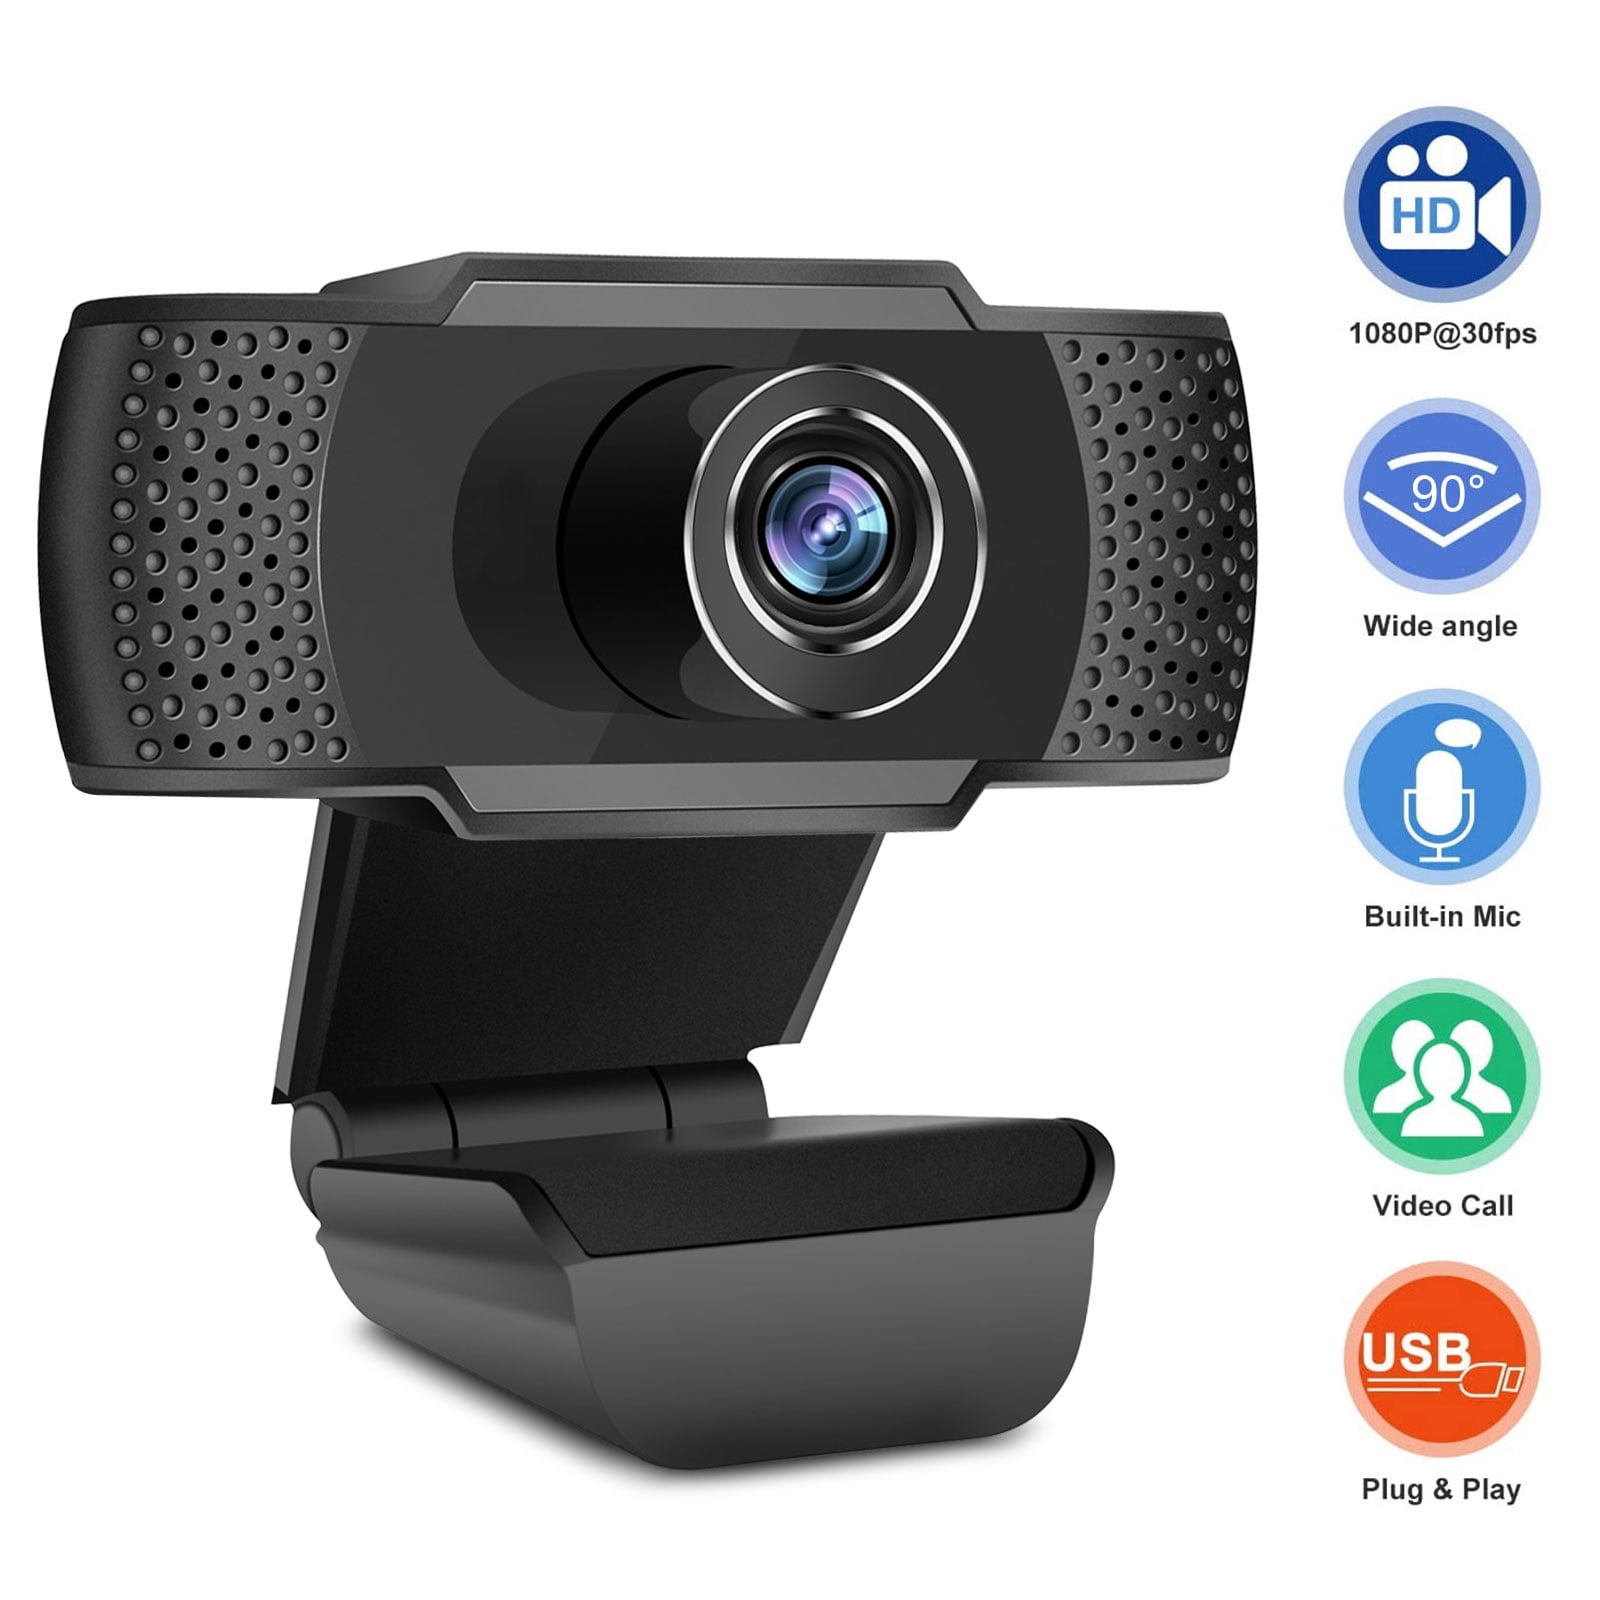 macchina fotografica Web Cam Desktop con microfono incorporato per video ca Y8C7 Webcam USB Webcam 